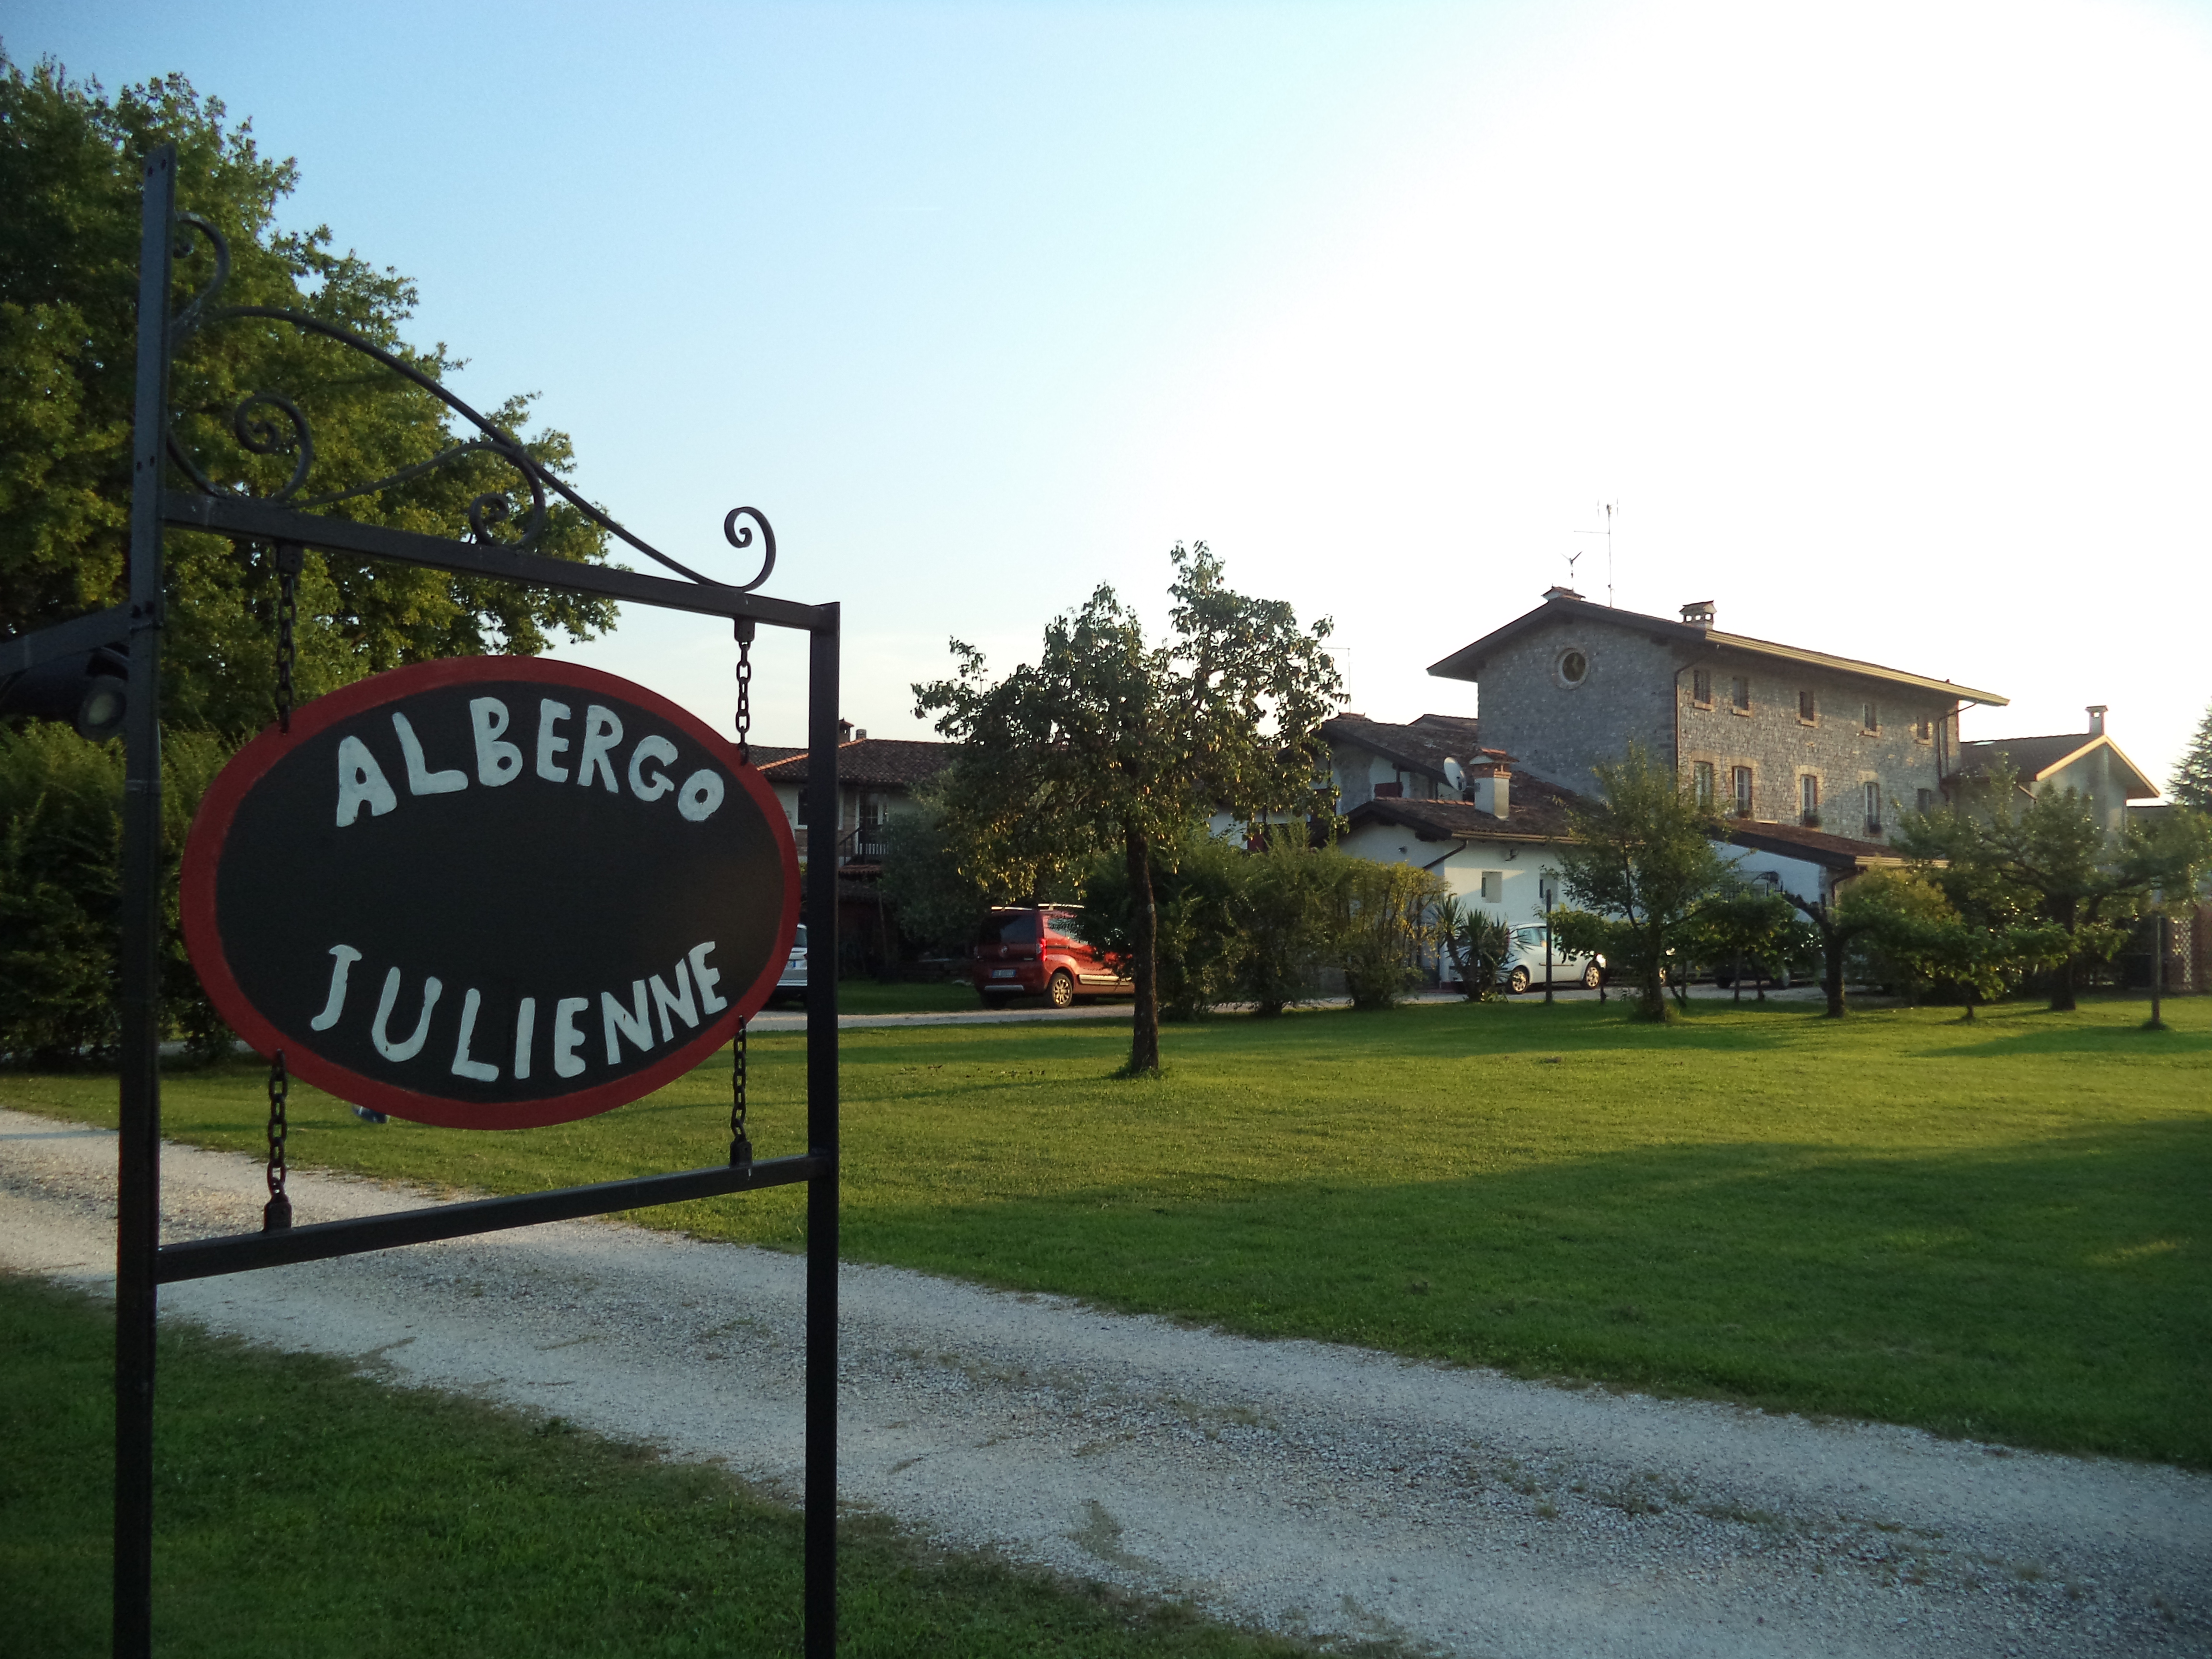 Al momento stai visualizzando Alvaro Vallar all’Albergo Julienne, 20 luglio, Arba (Pn) – PORDENONE POESIA COMMUNITY – foto